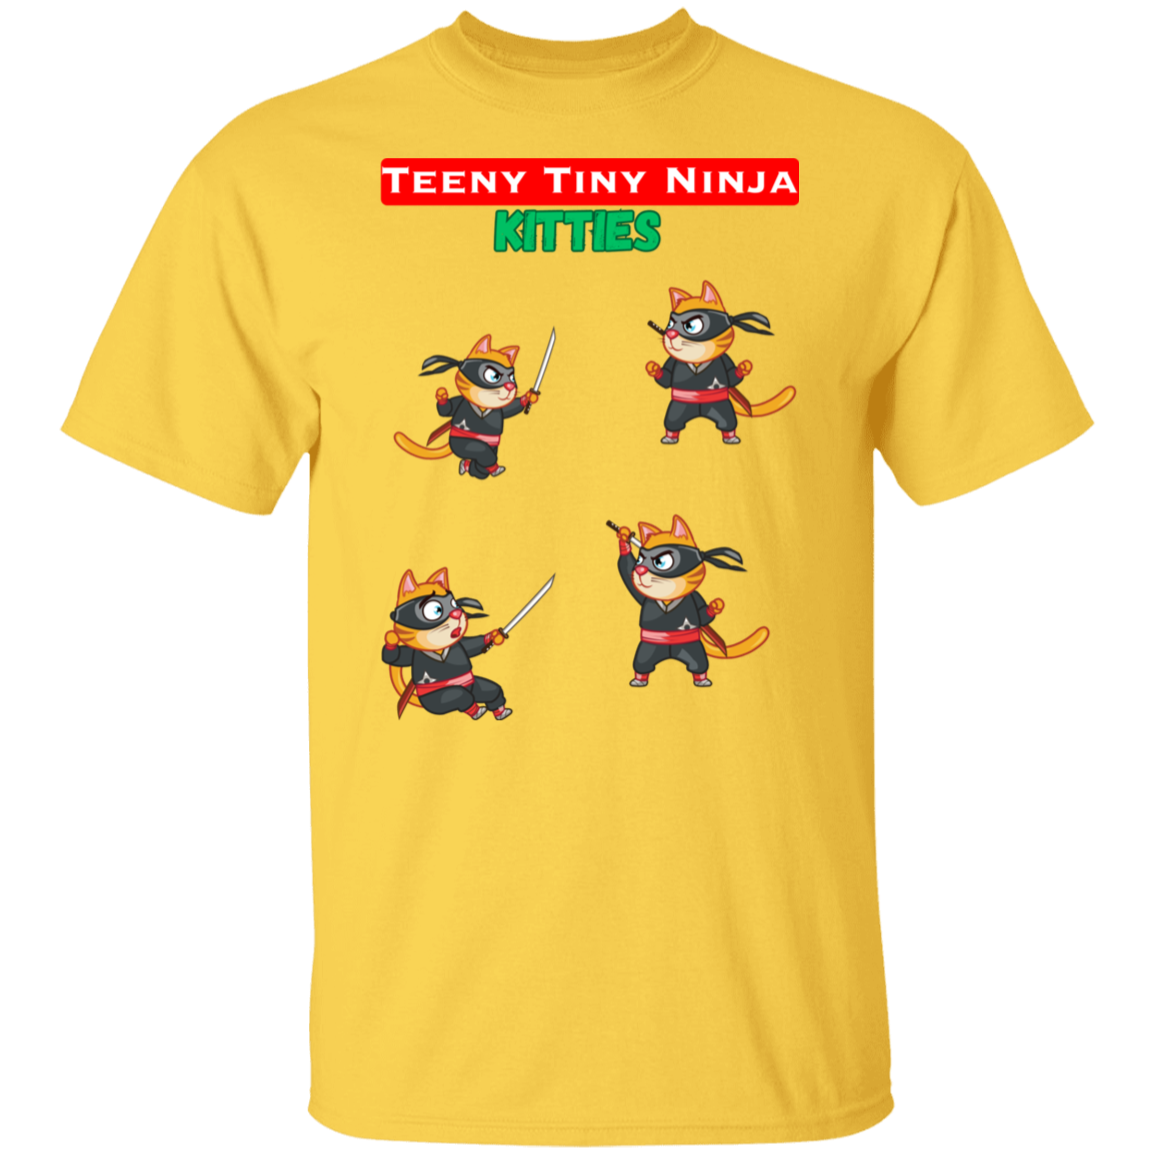 Teeny Tiny Ninja Kitties - Men's T-Shirt